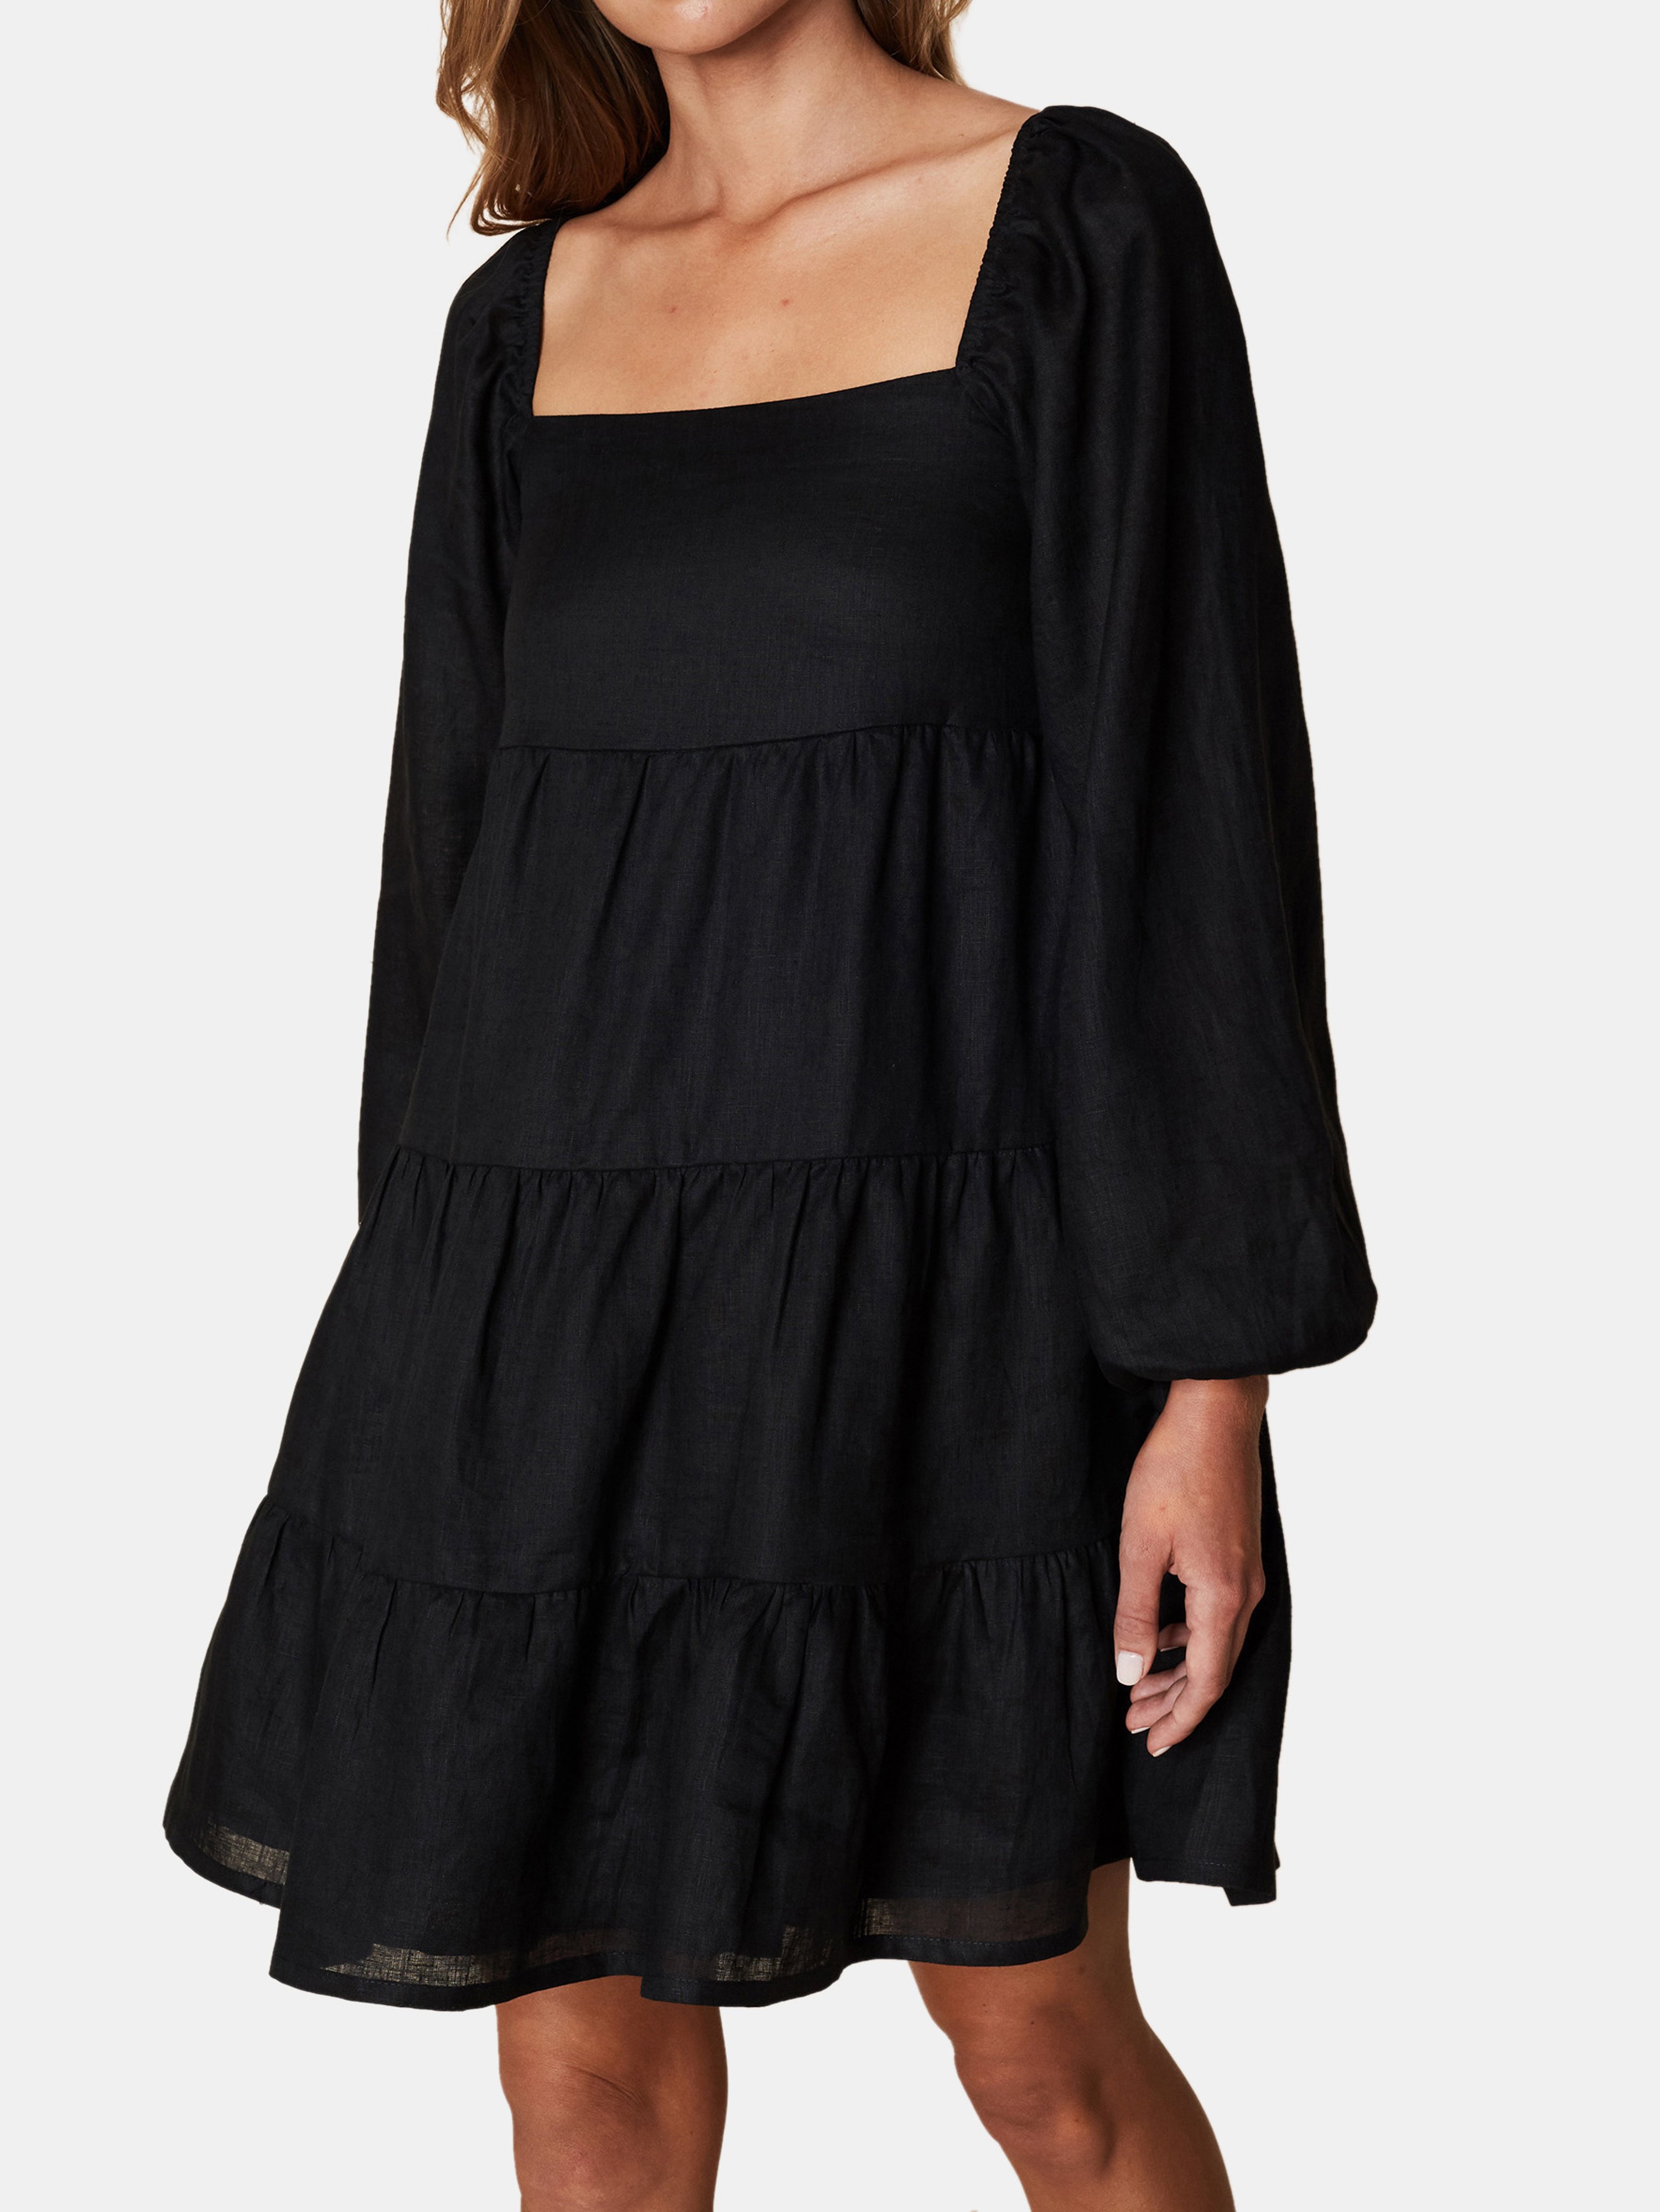 Morissa Mini Dress - Plain Black